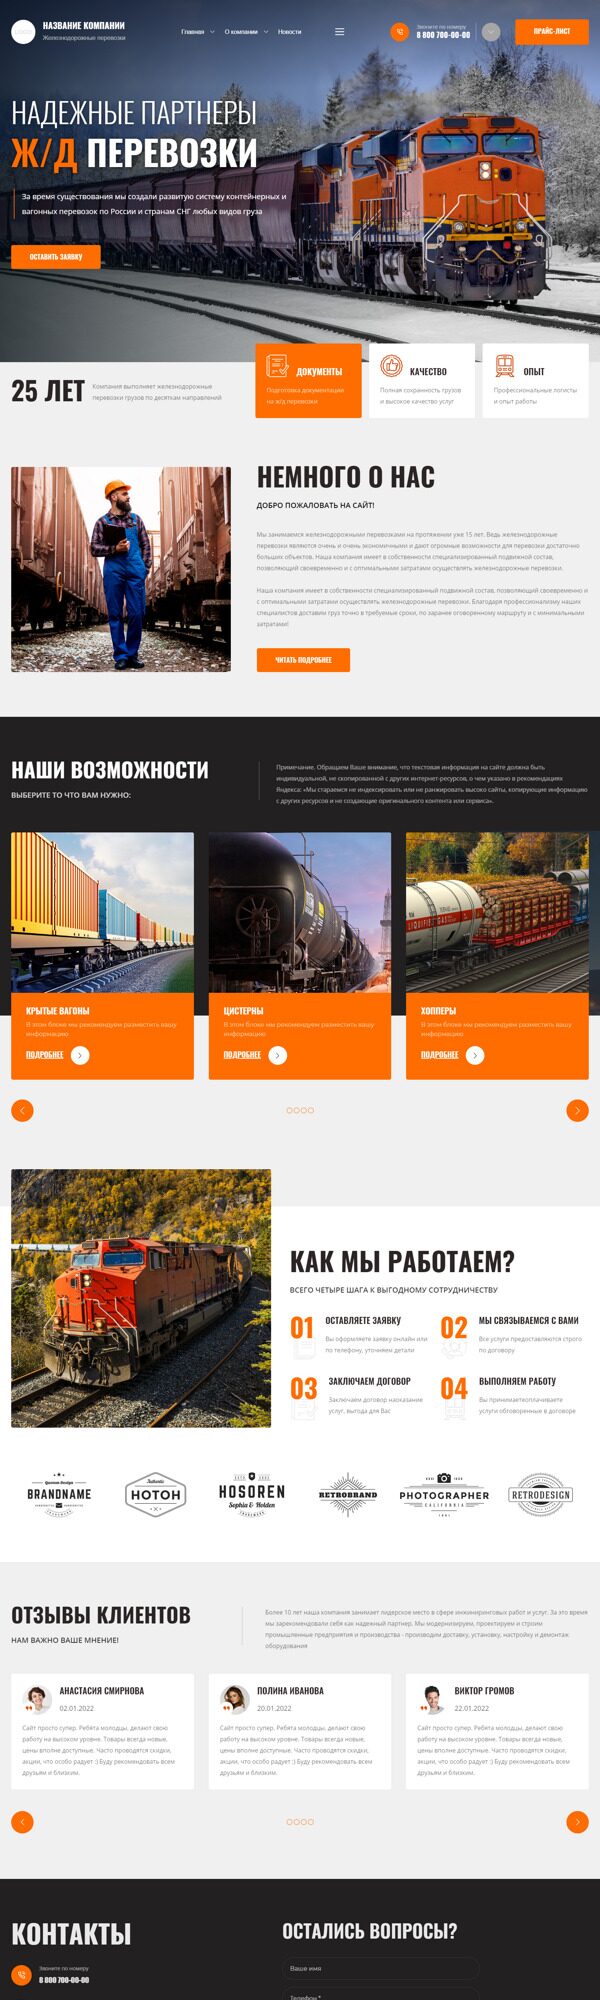 Готовый Сайт-Бизнес № 4266299 - Железнодорожные грузоперевозки (Десктопная версия)